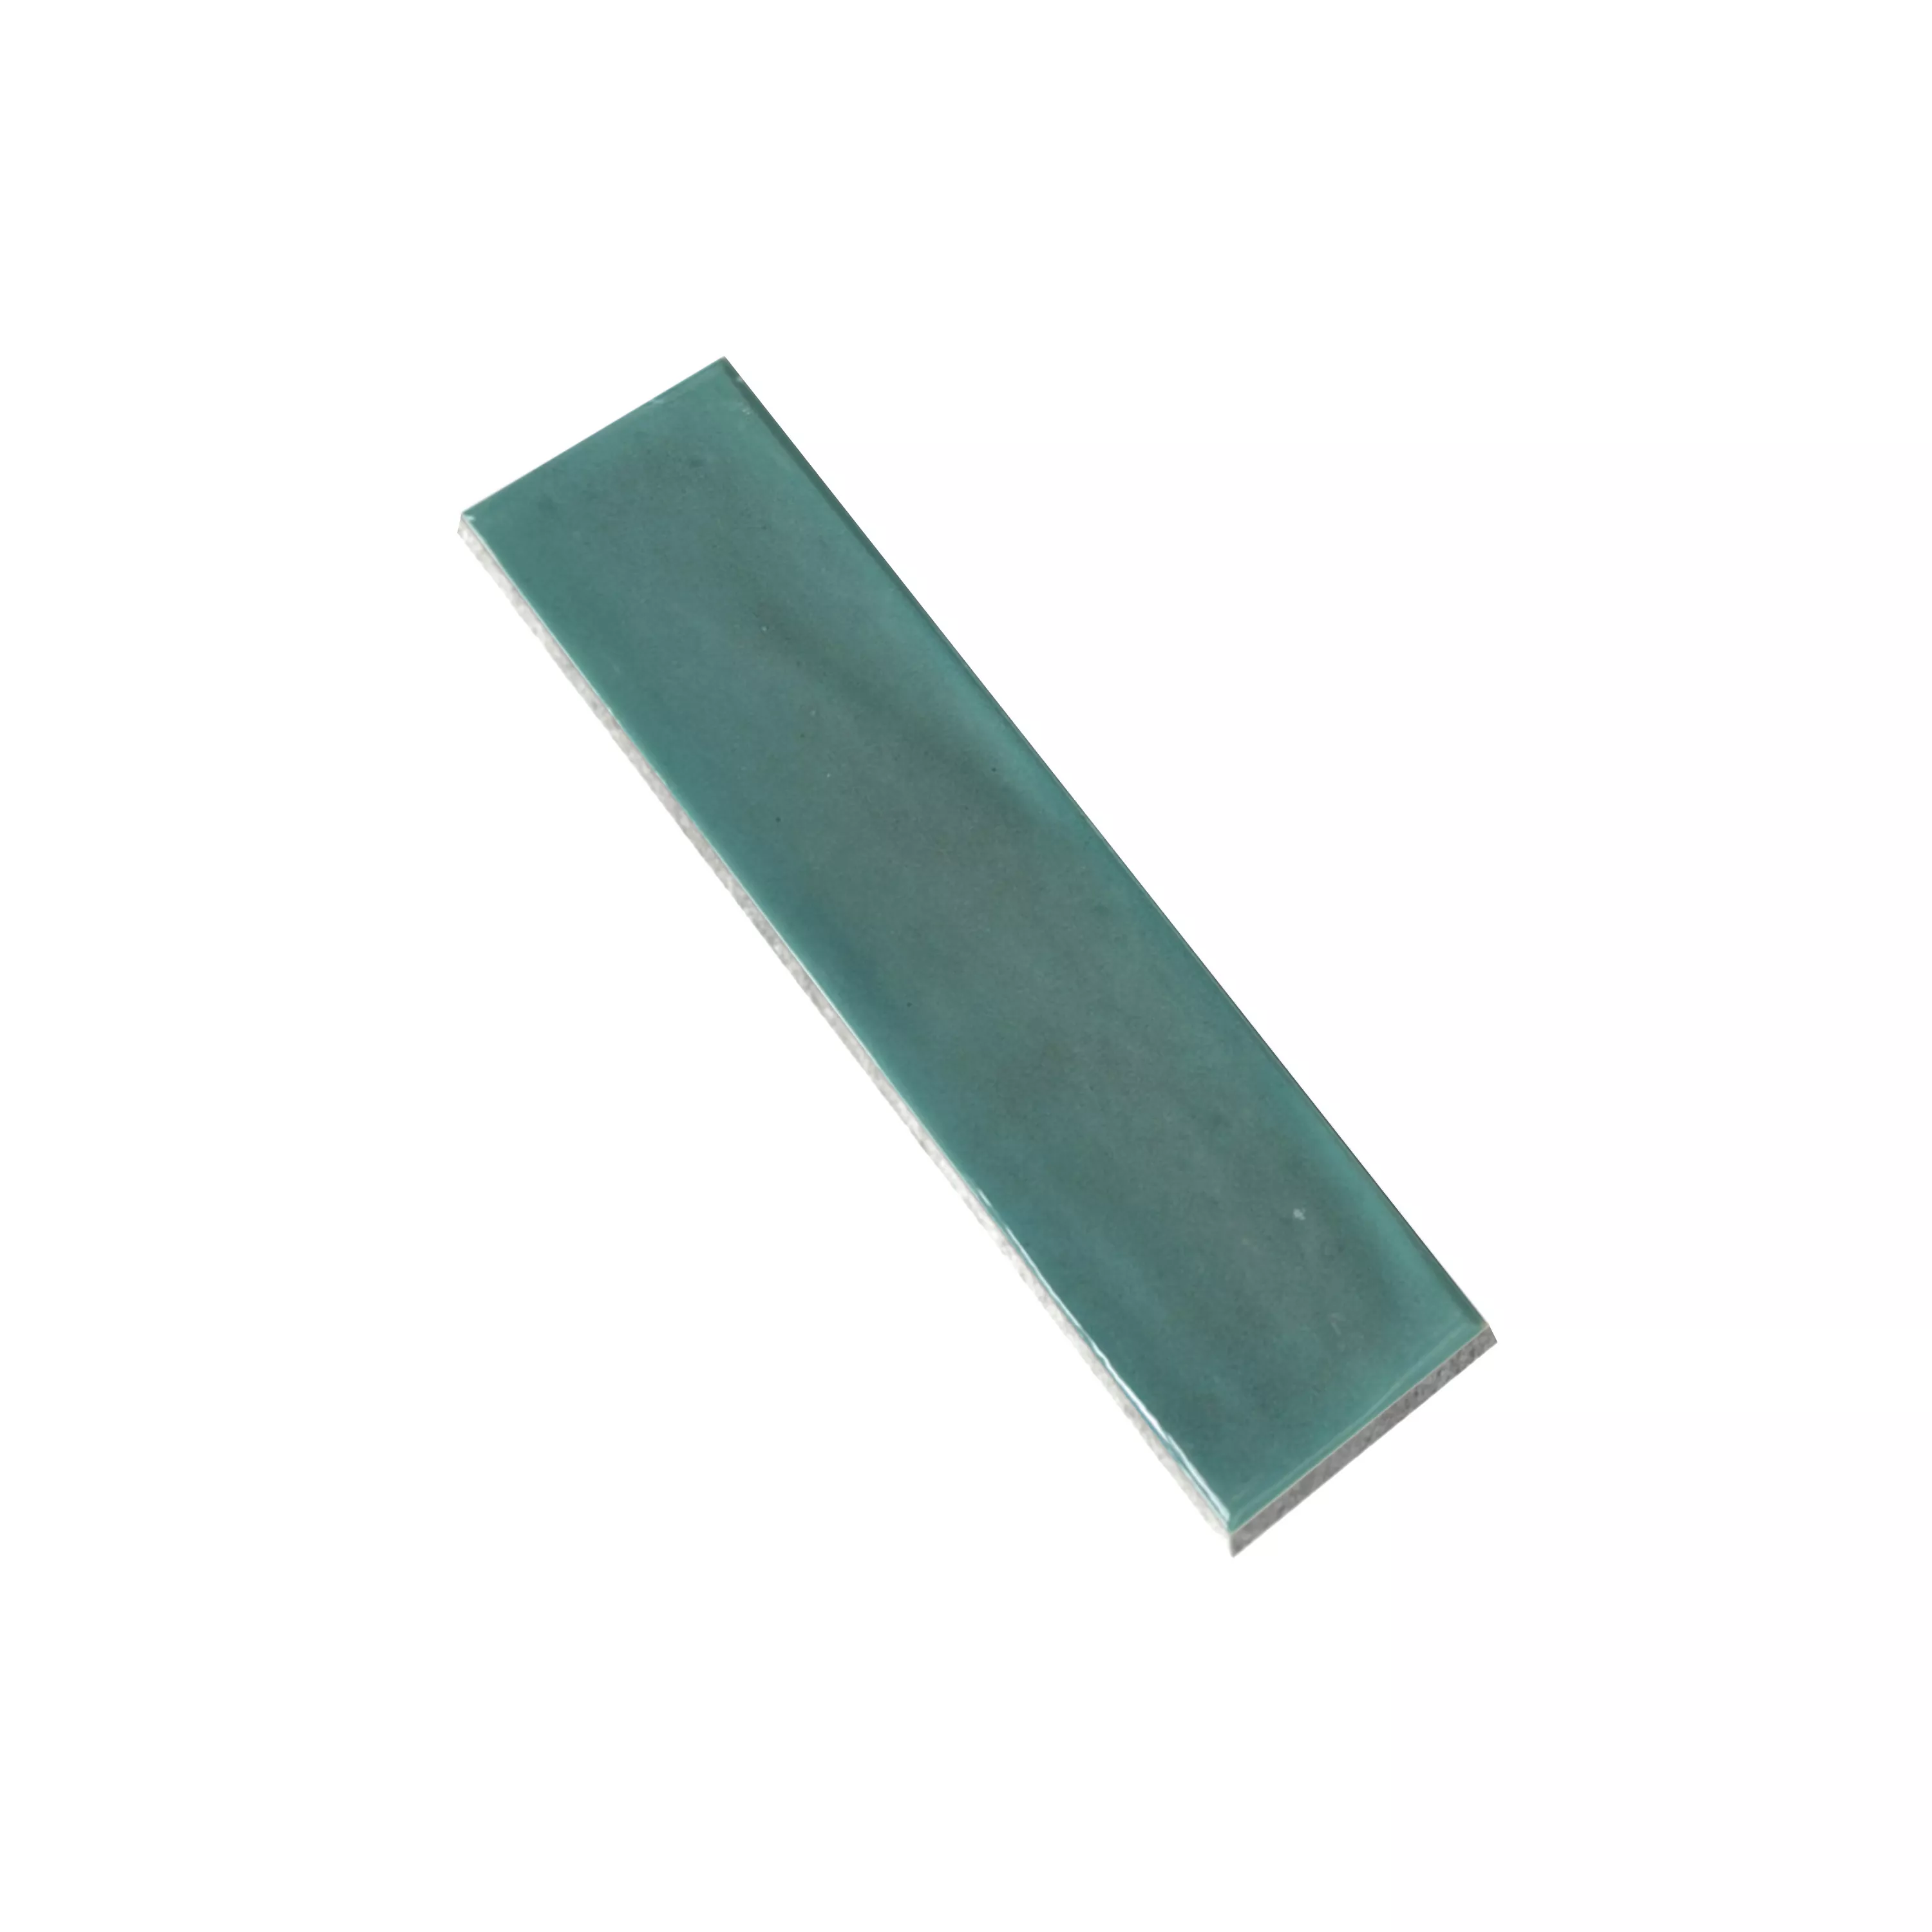 Nástěnné Obklady Conway Zvlněné 7,5x30cm Smaragdová Zeleň